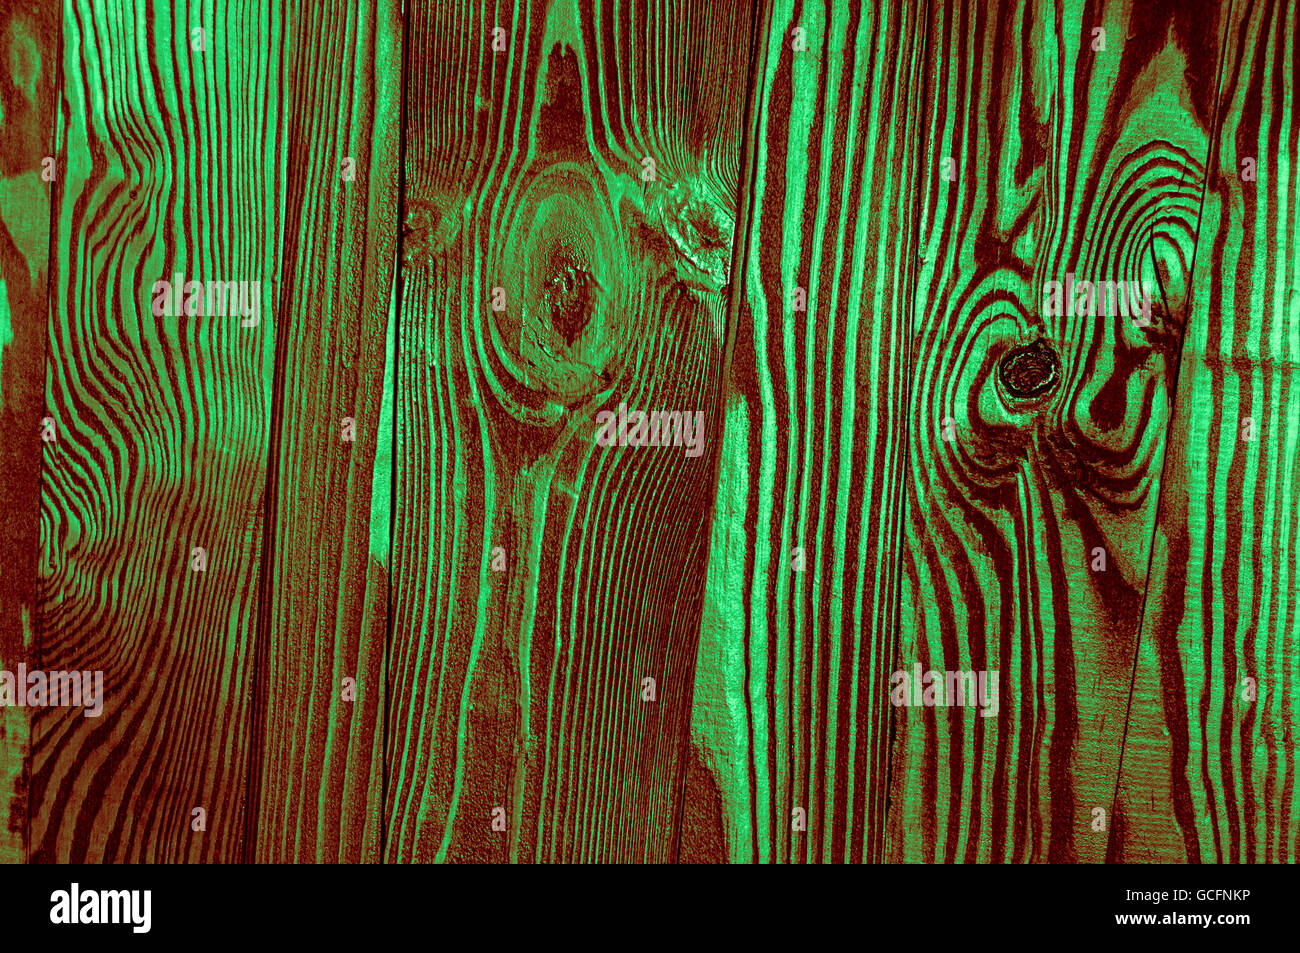 Perfetta luce verde scuro rossiccio irregolari di colore verdastro vecchio legno lucido scuro superficie di legno sfondo texture Foto Stock